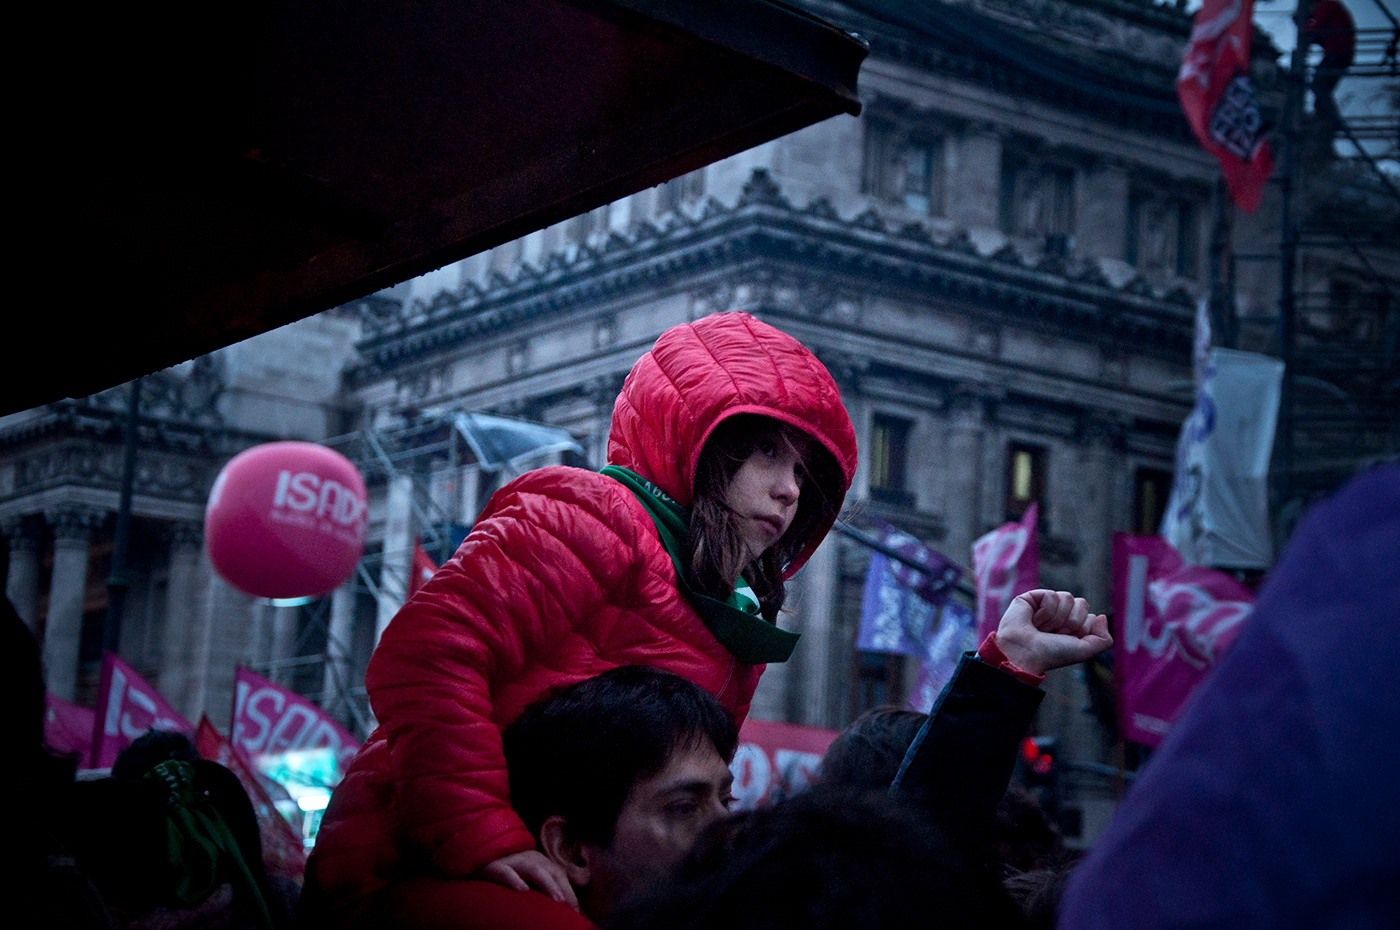 Fotografia marcha abortolegal argentina retratos feminismo Mujeres manifestacion buenosaires